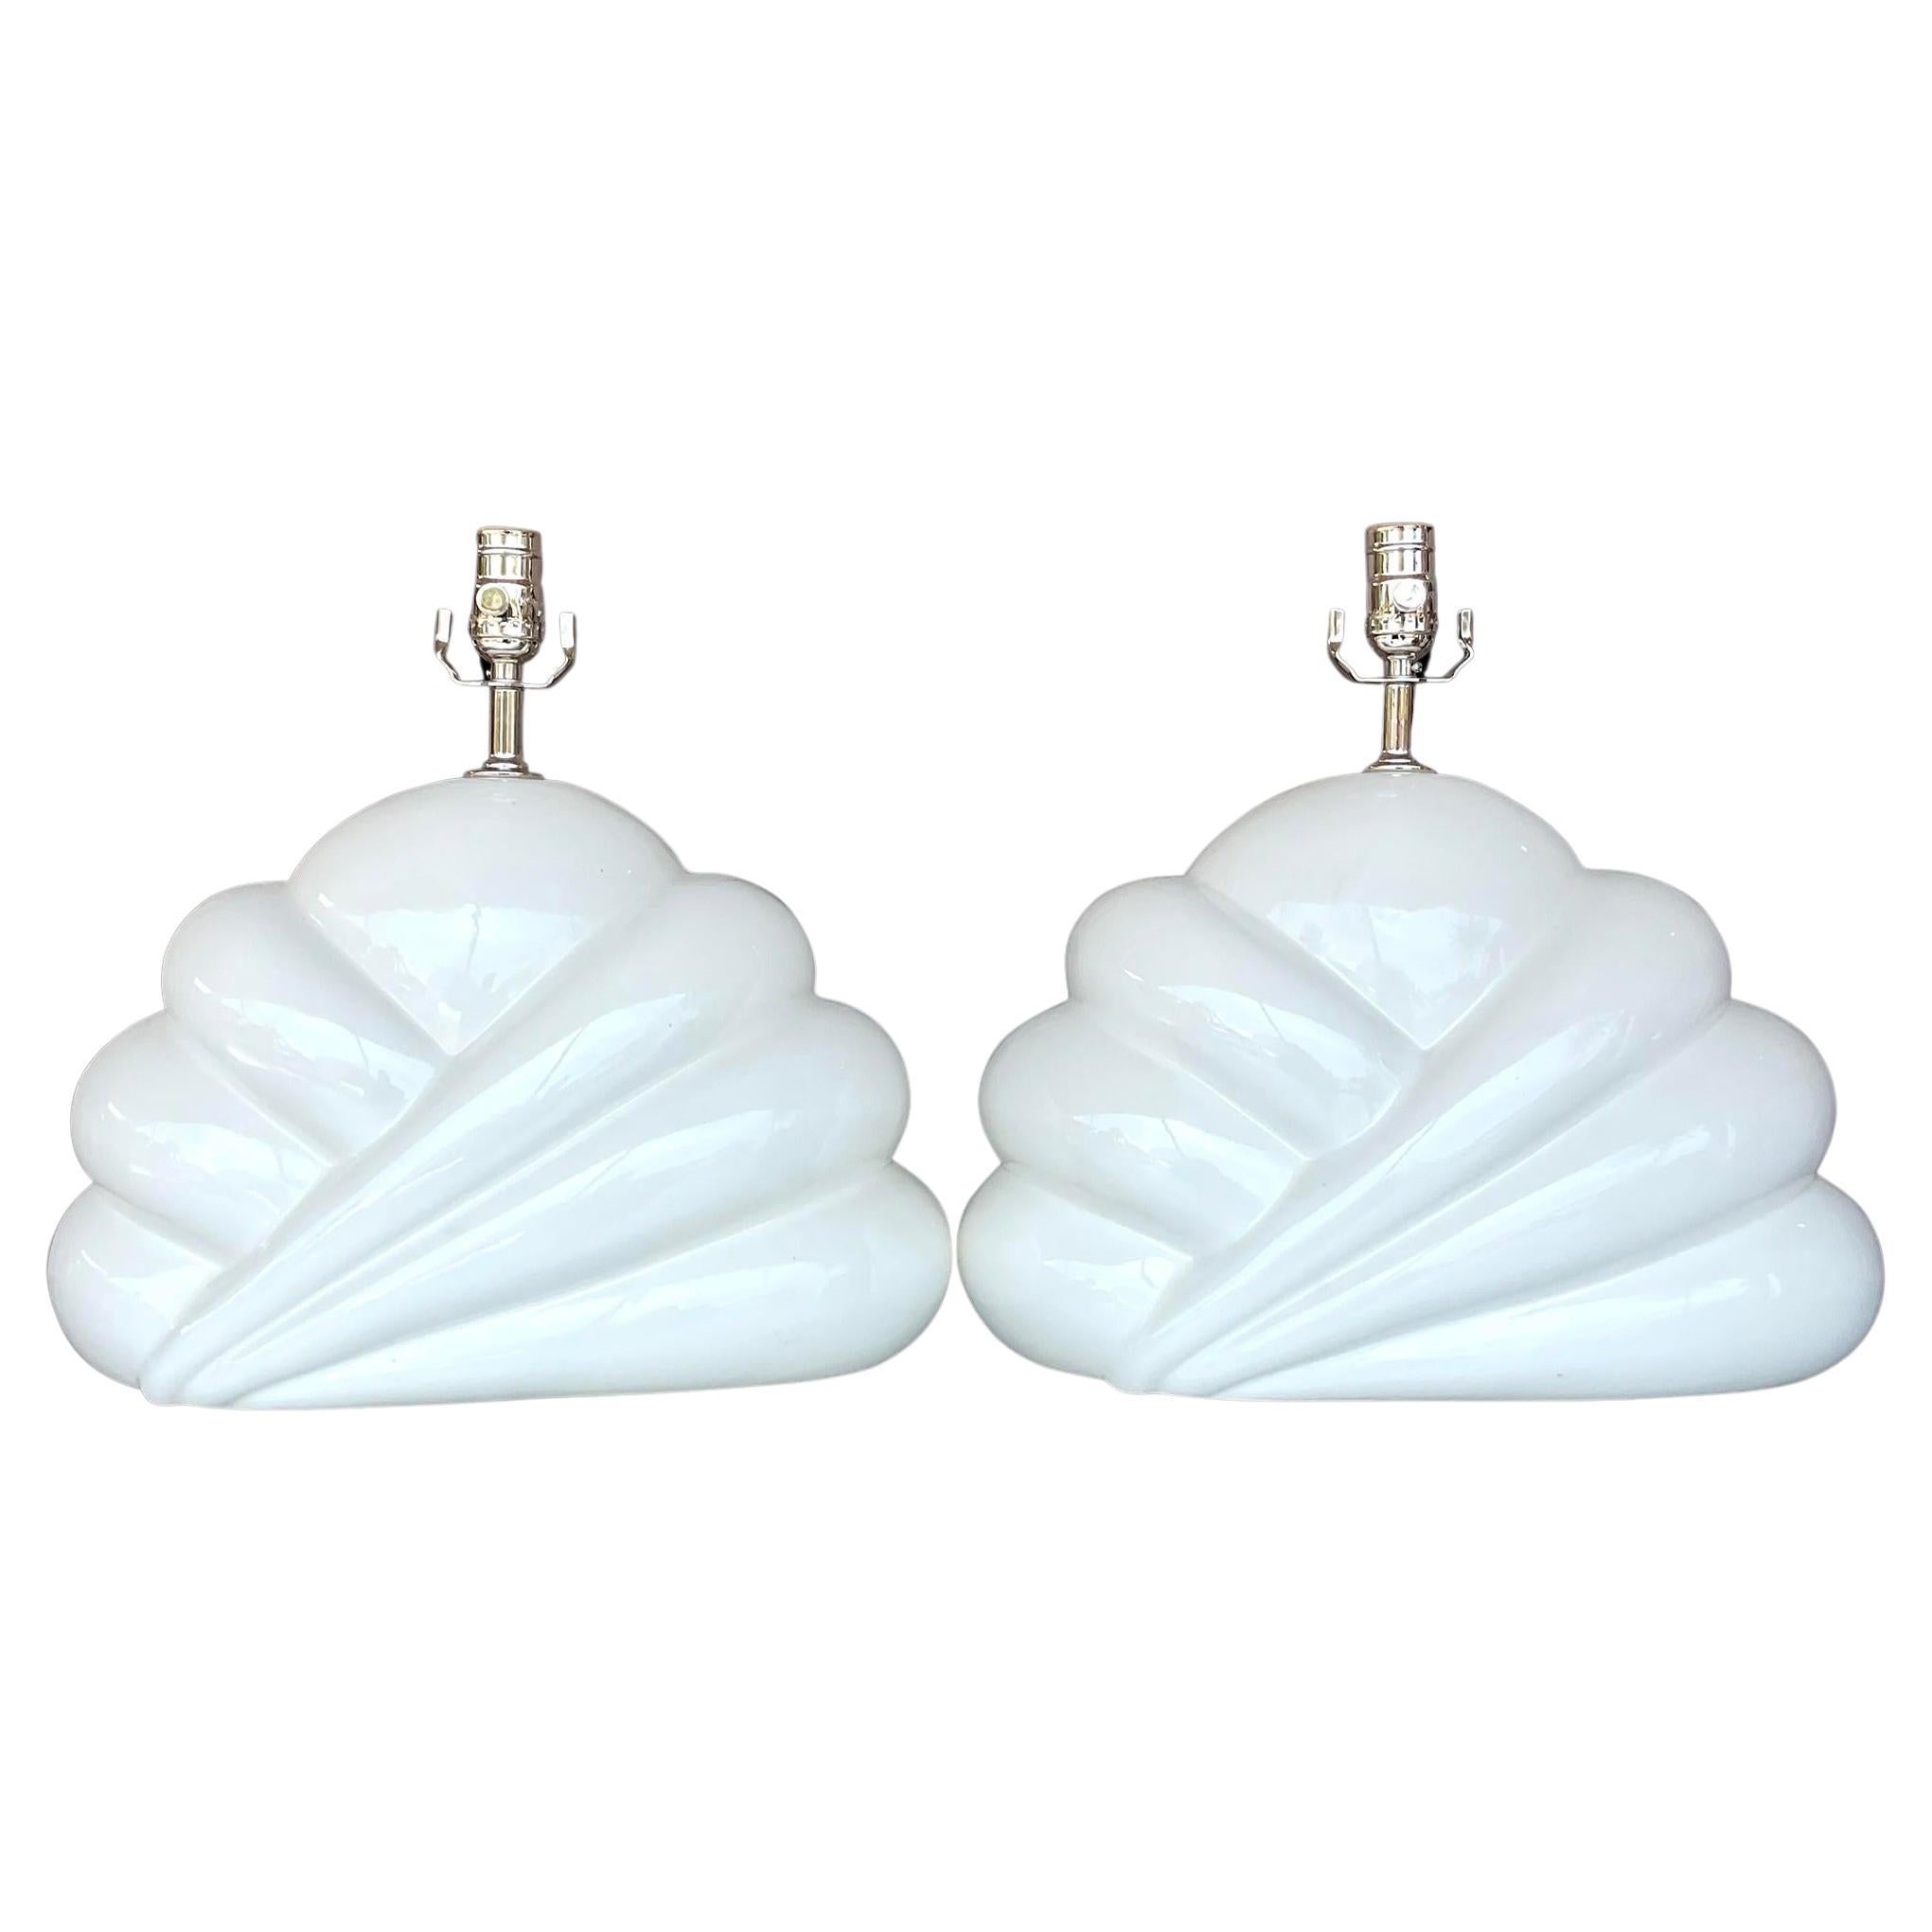 Vintage Boho Glazed Ceramic Cloud Lamps - a Pair For Sale